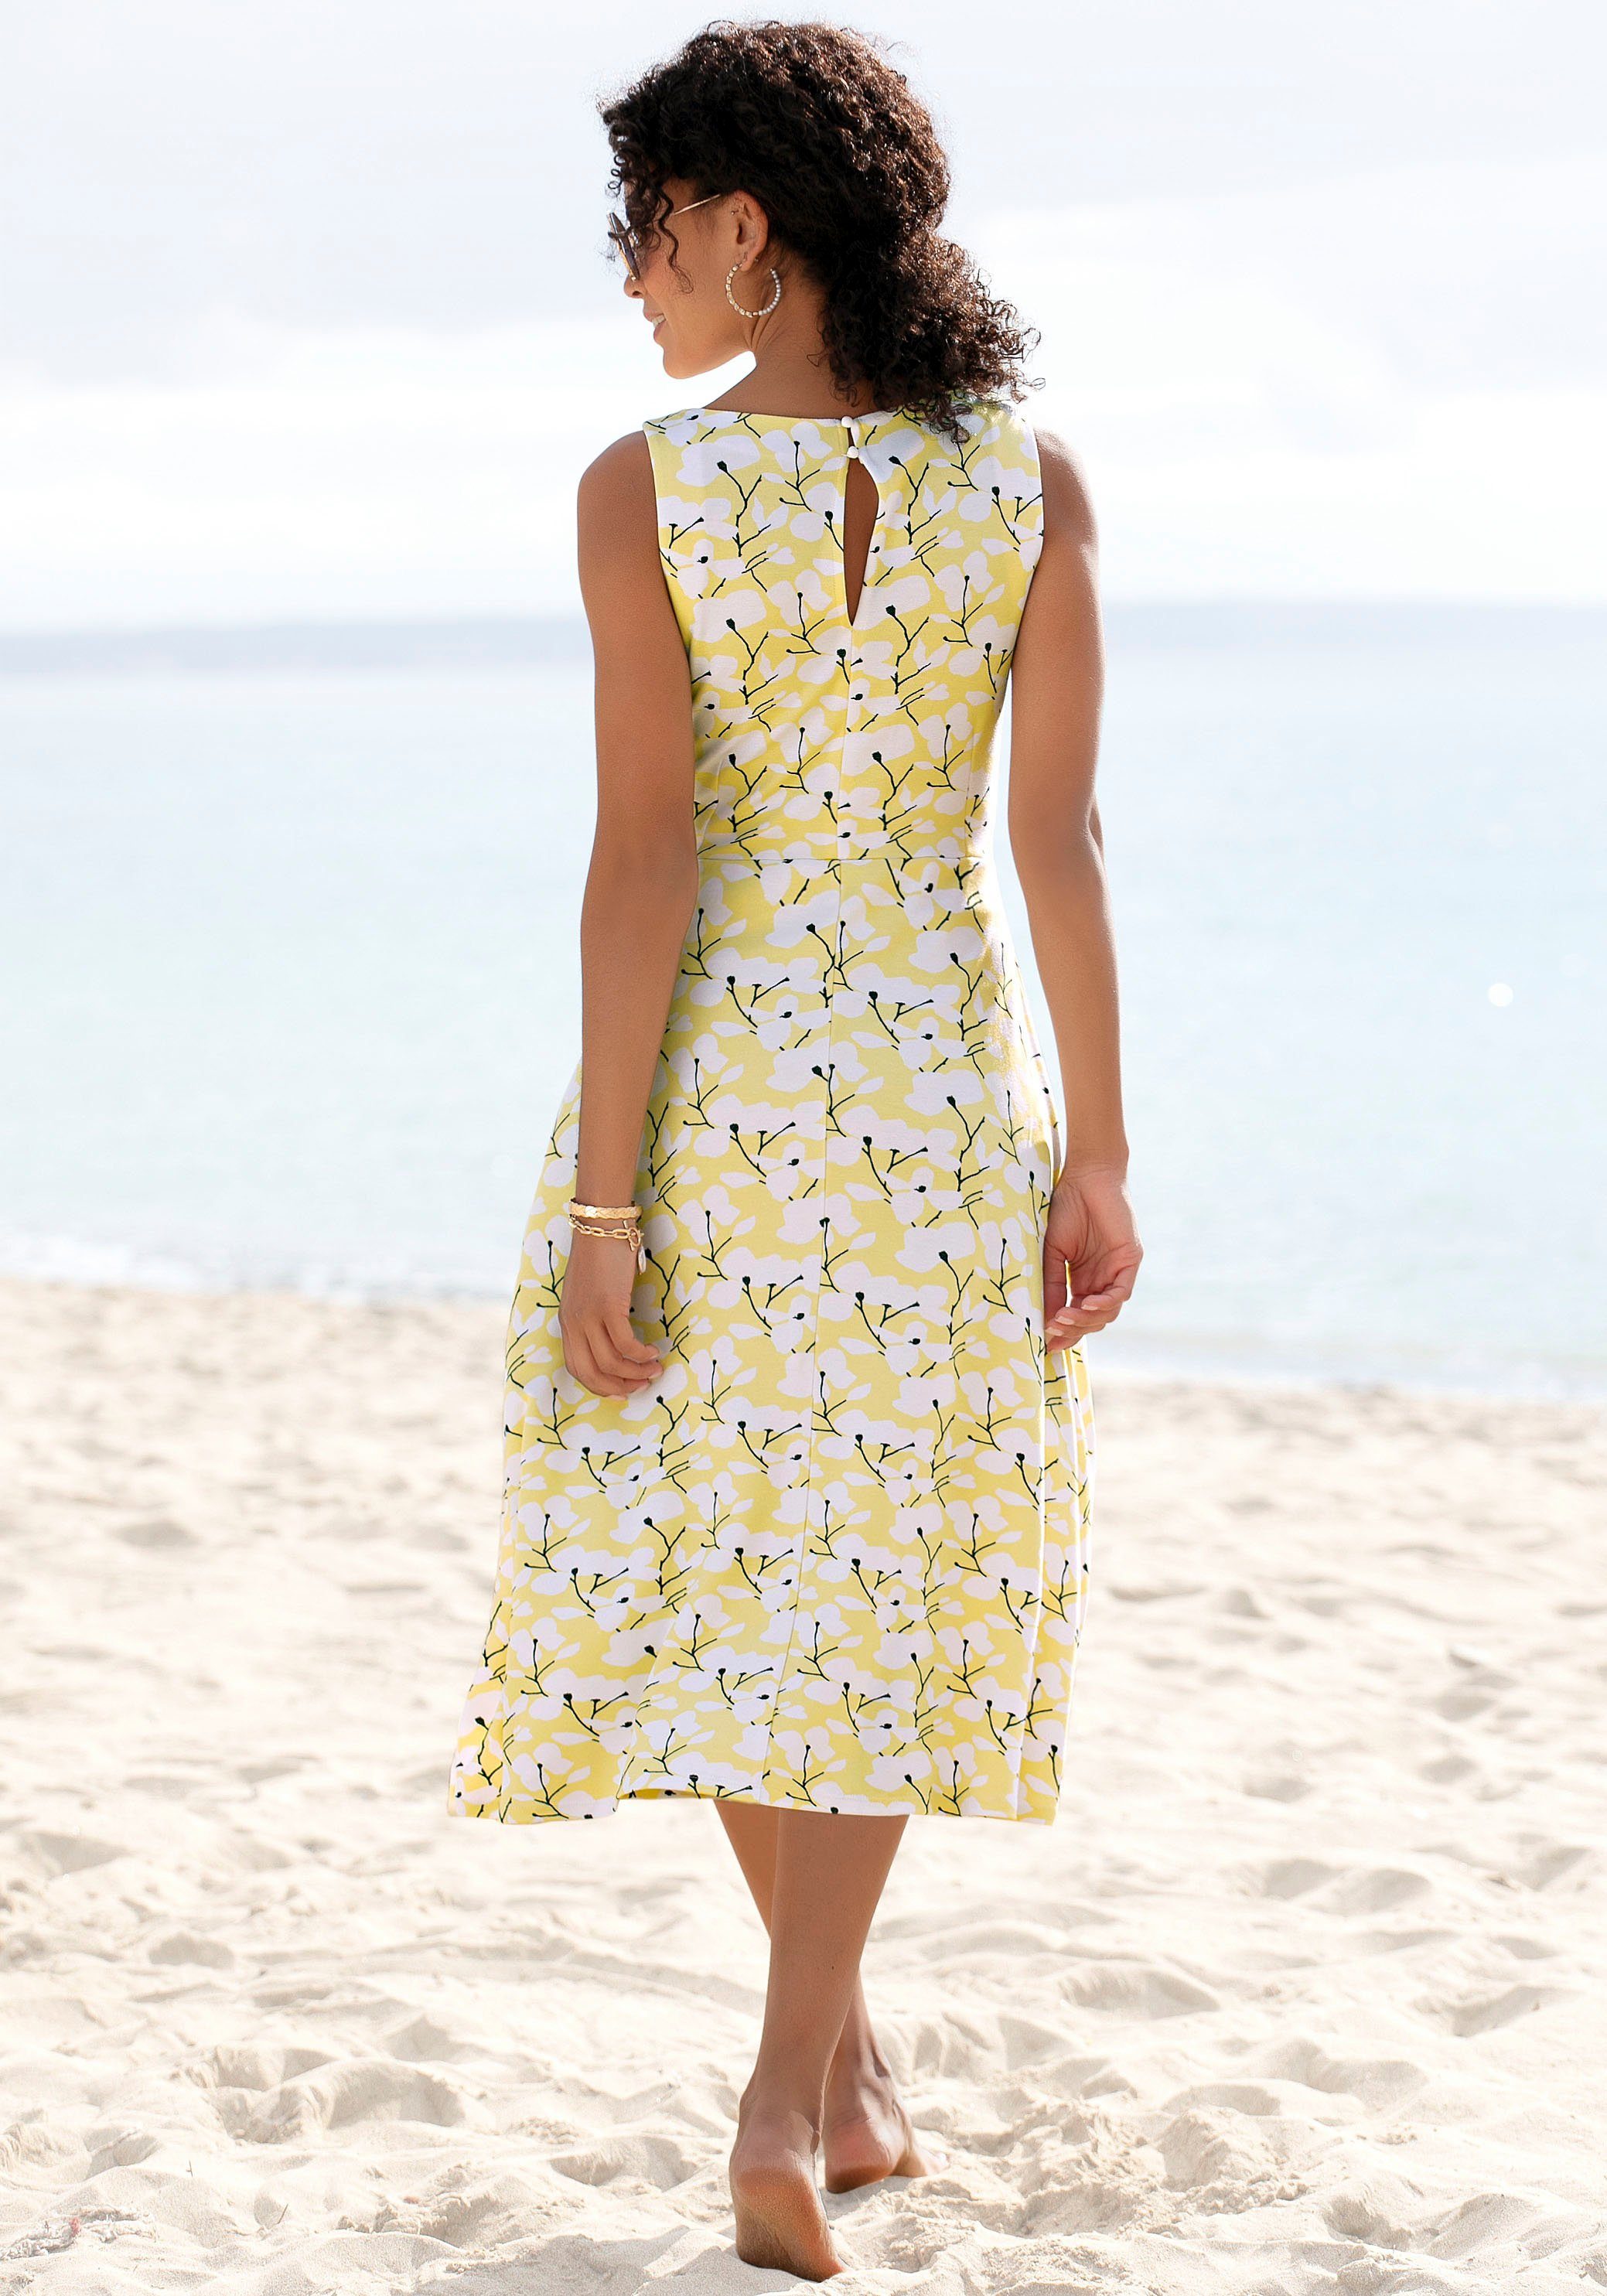 Beachtime Sommerkleid mit Blumendruck, Strandbekleidung Strandmode, gelb-creme-bedruckt